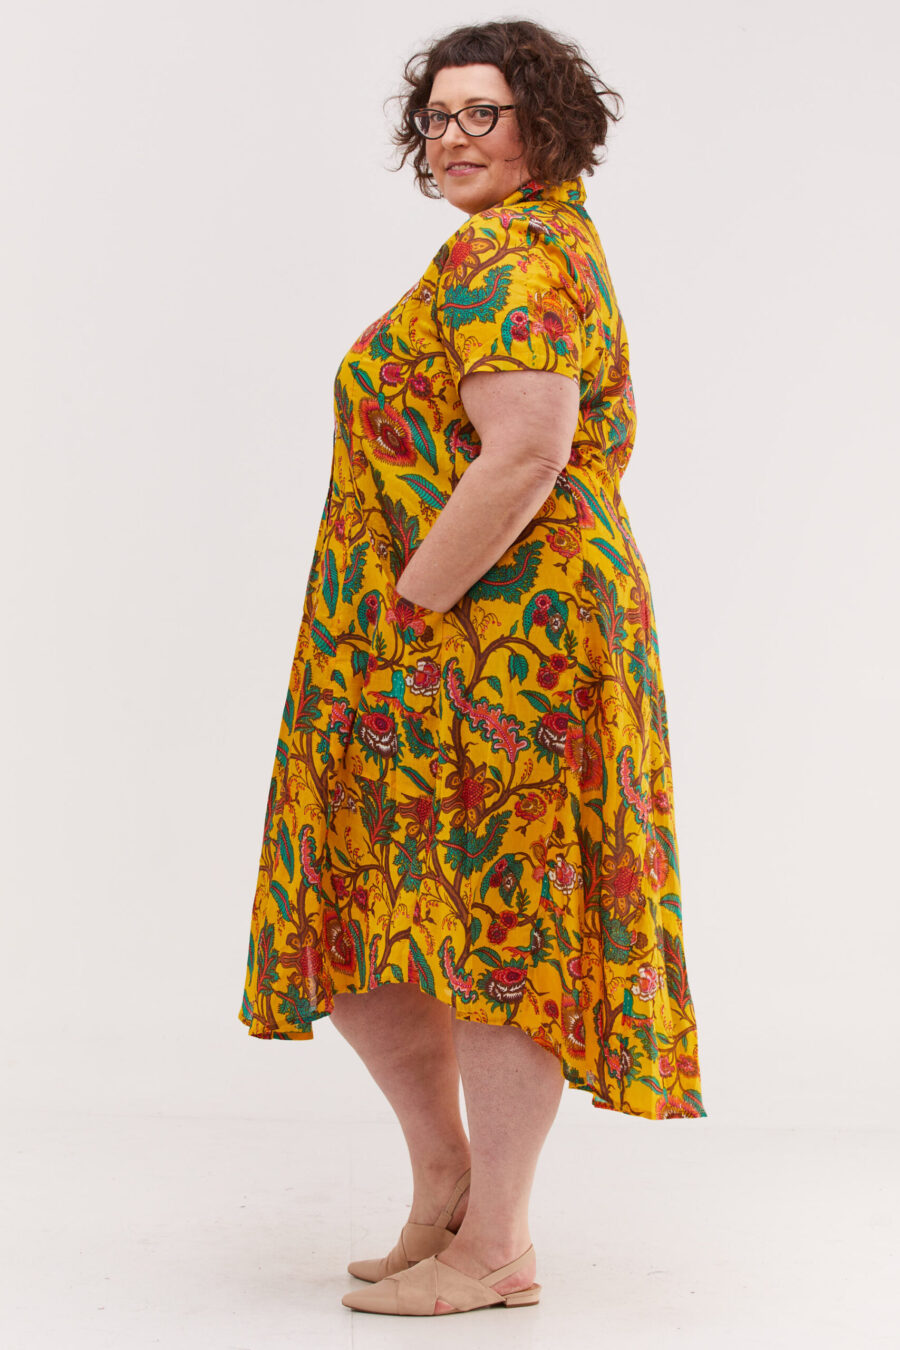 שמלת איה'לה | שלמת אוברסייז בעיצוב ייחודי - הדפס פלורה צהובה, שמלה צהובה עם הדפס פרחוני צבעוני